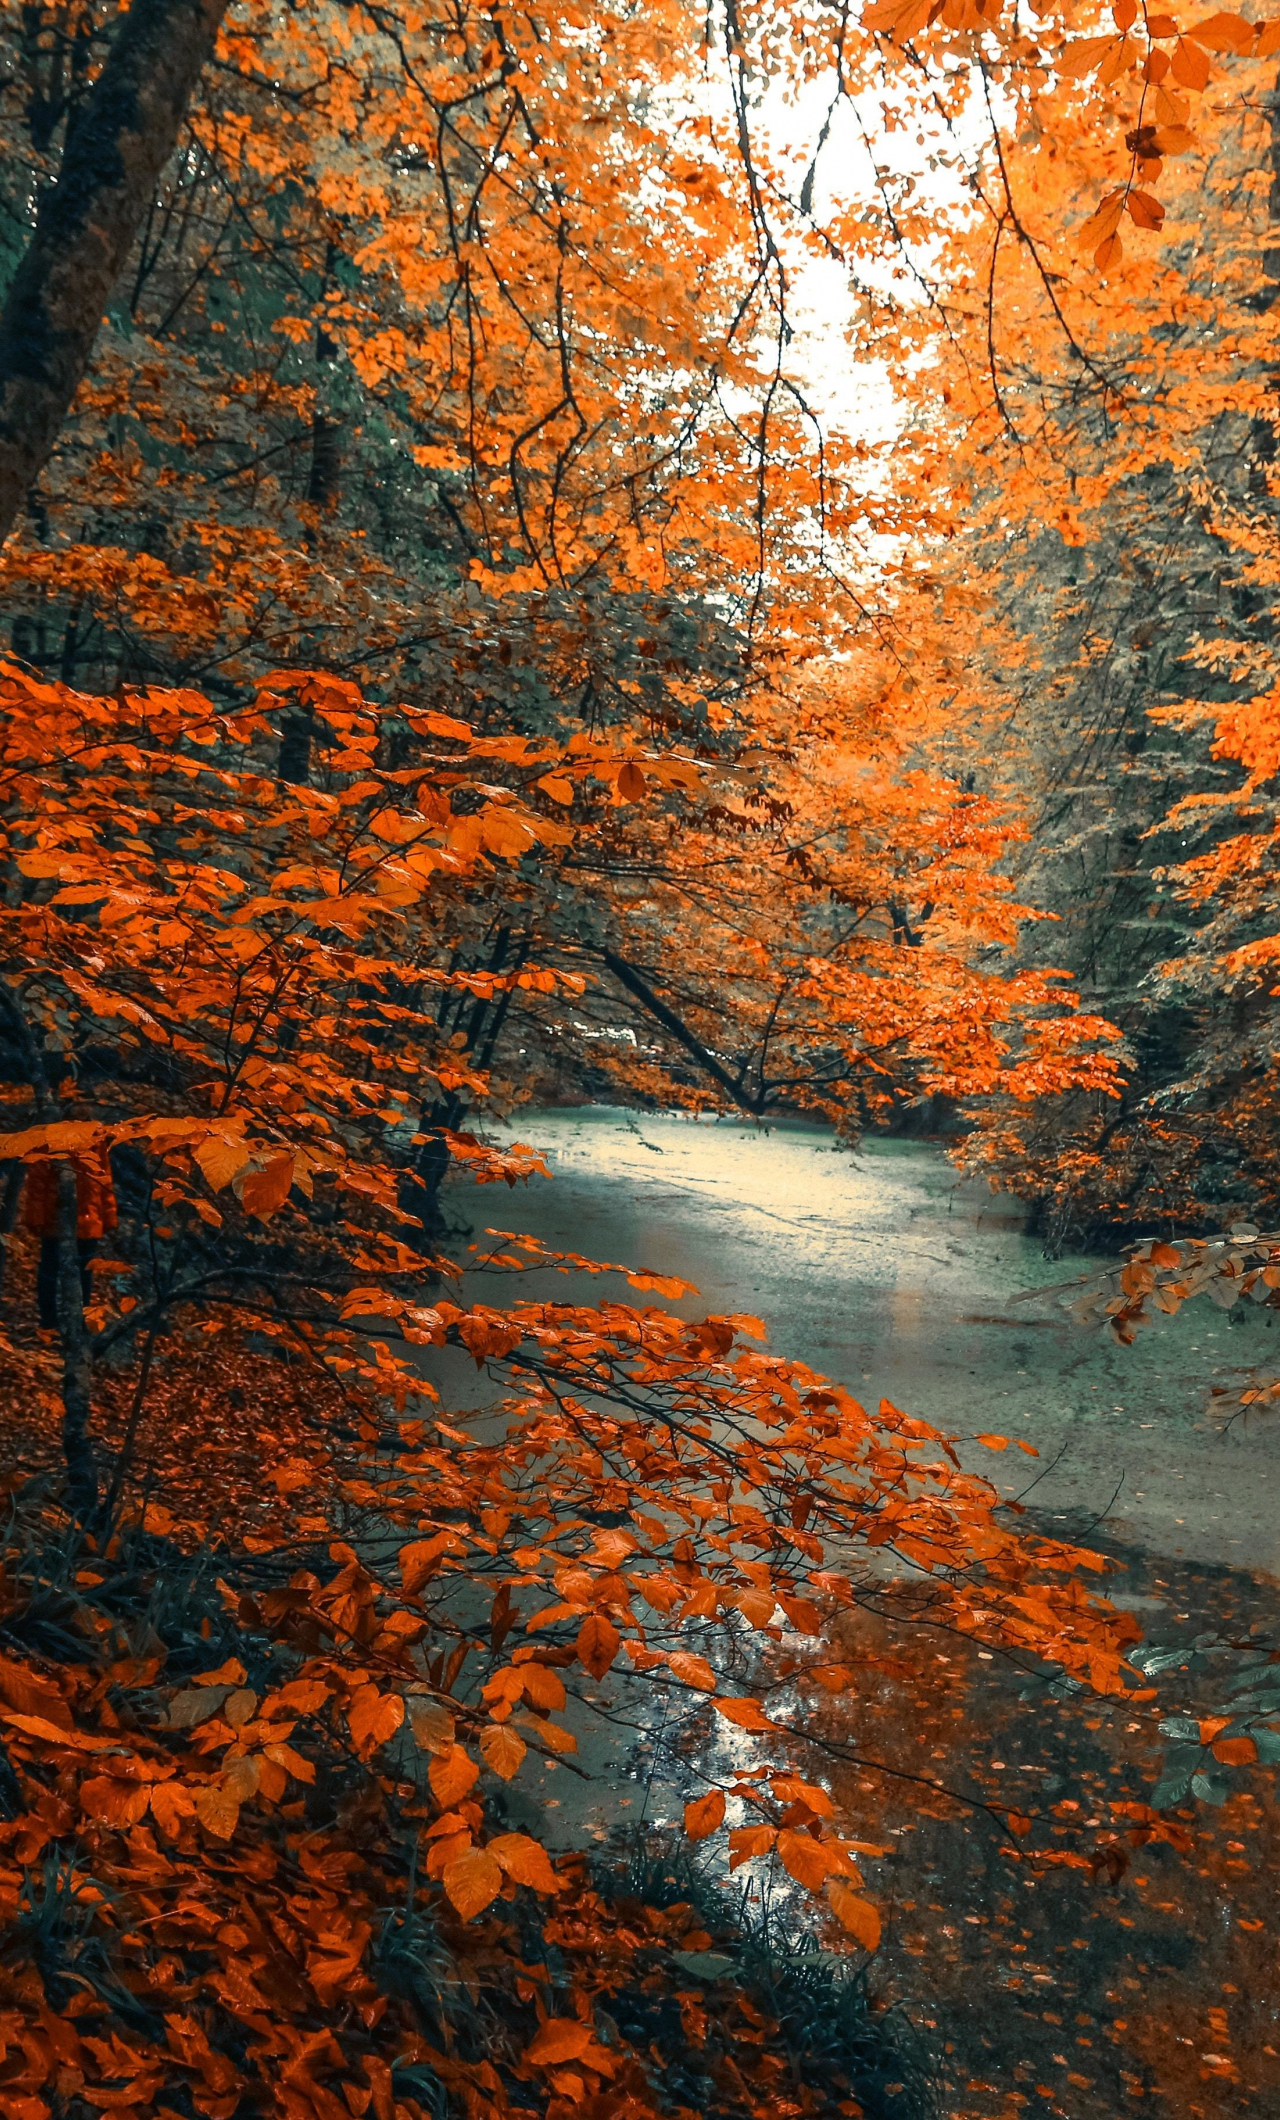 Cây, rừng, thiên nhiên, nhánh cam: Các biểu tượng của thiên nhiên như cây, rừng, nhánh cam đều có sắc màu đặc trưng và đầy sức sống. Những bức ảnh của chúng sẽ đem lại cho bạn những cảm xúc tuyệt vời, khi mà bạn được tận hưởng vẻ đẹp hoang sơ và mạnh mẽ của thiên nhiên.